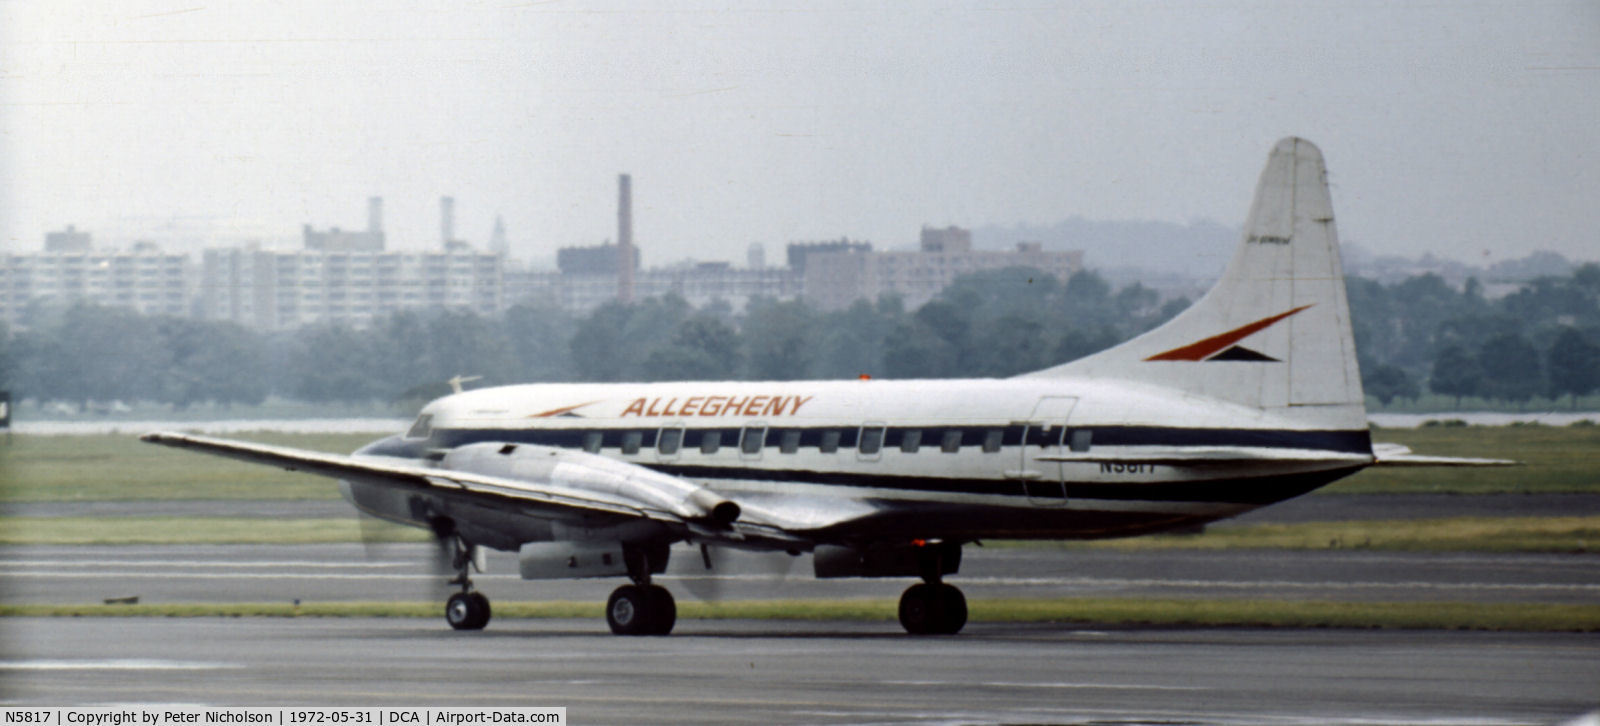 N5817, 1953 Convair CV-540 (340) C/N 340-081, Convair 340 of Allegheny Airlines as seen at Washington National in May 1972